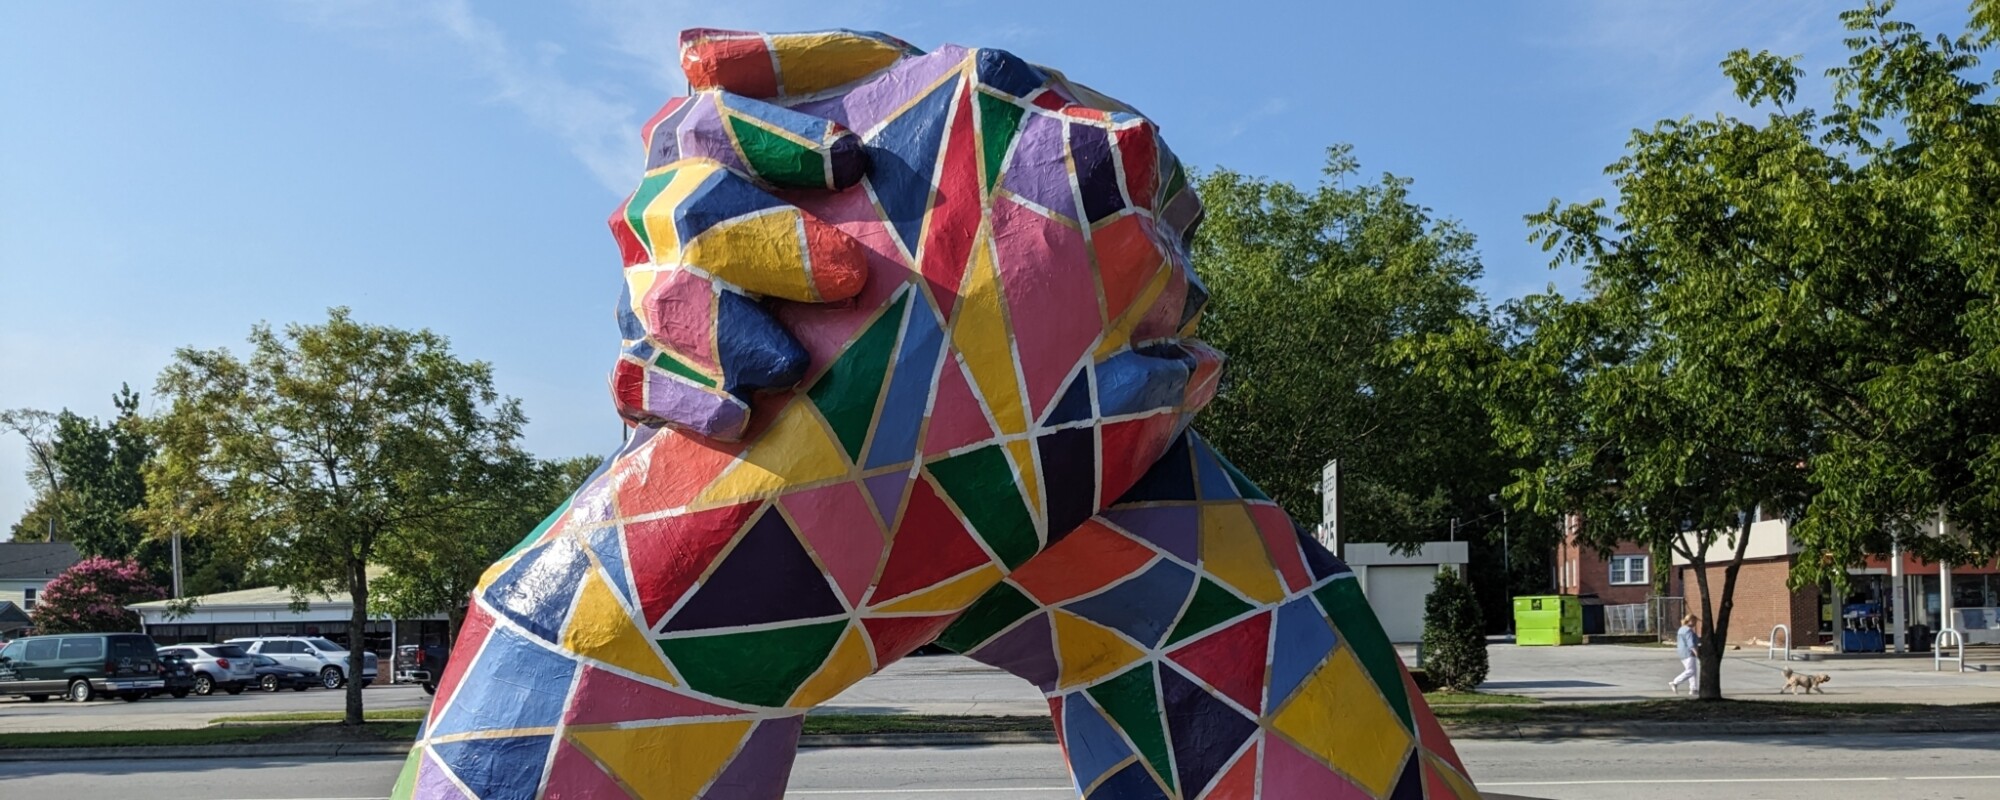 Gran escultura multicolor de manos que se levantan del suelo y se abrazan.